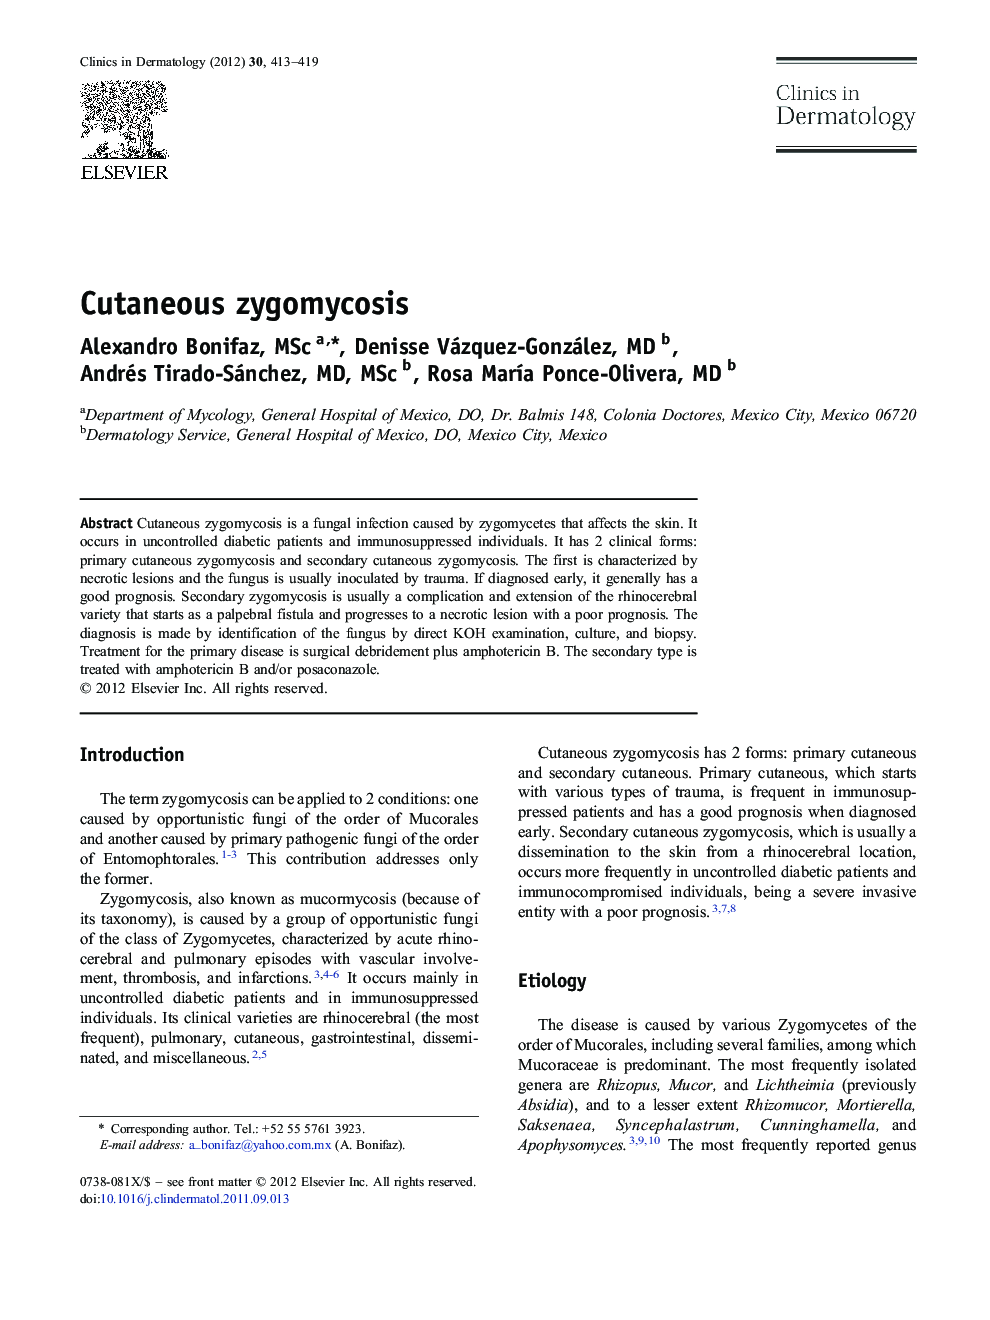 Cutaneous zygomycosis